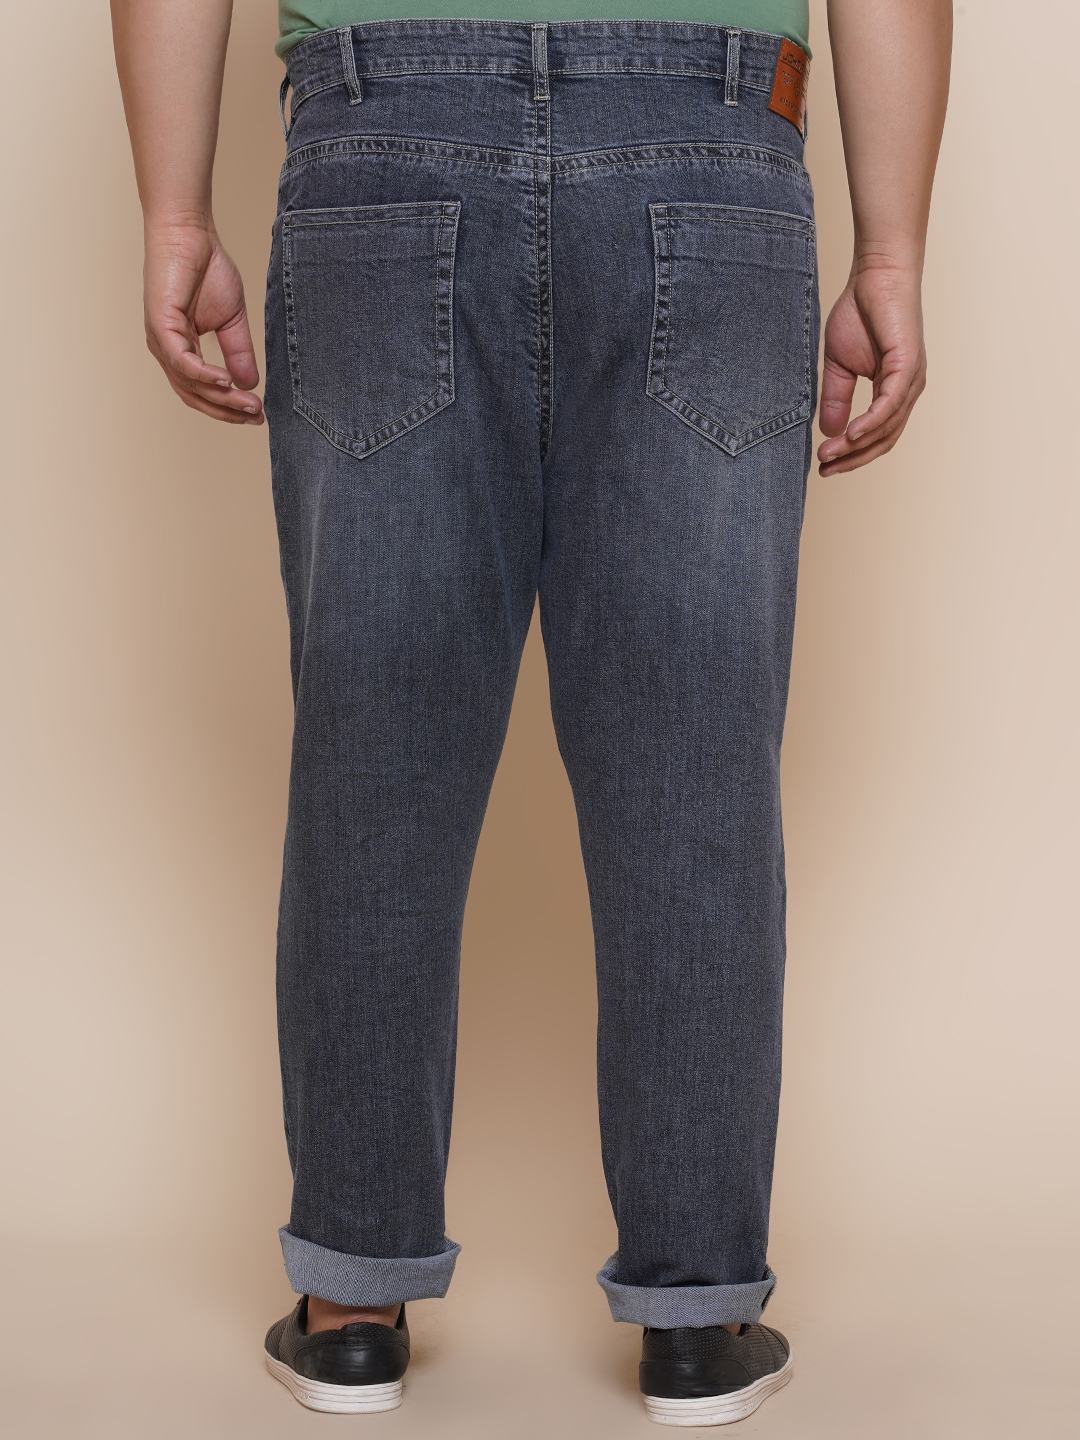 bottomwear/jeans/JPJ27003/jpj27003-5.jpg